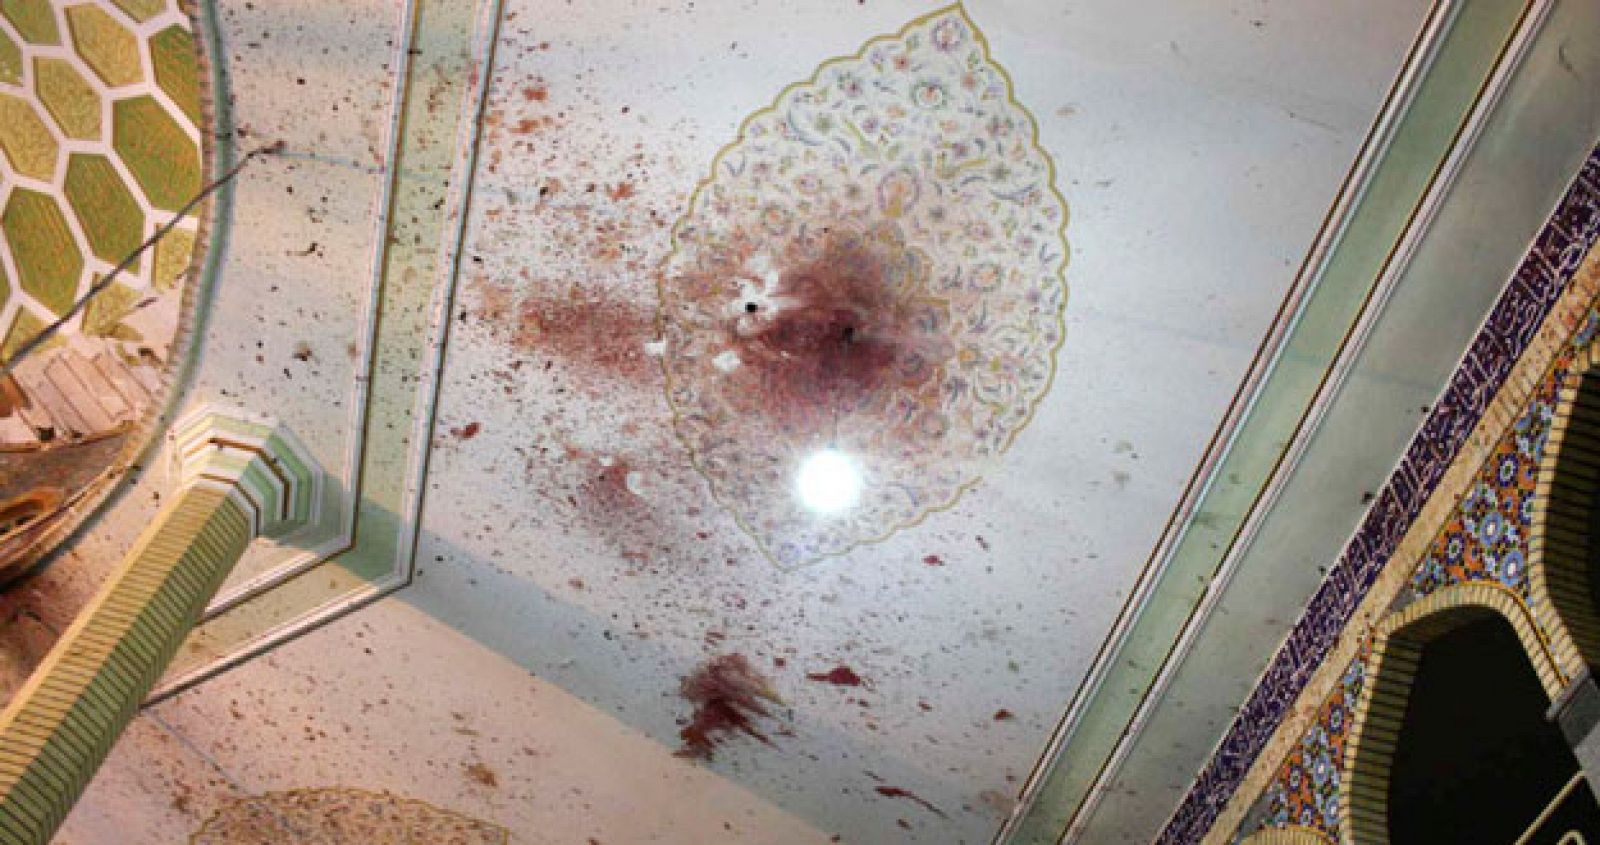 En el techo de la mezquira de la ciudad de Zahedan, en el sureste de Irán, se pueden apreciar las marcas de sangre que ha dejado la explosión que ha causado la muerte a 30 personas.